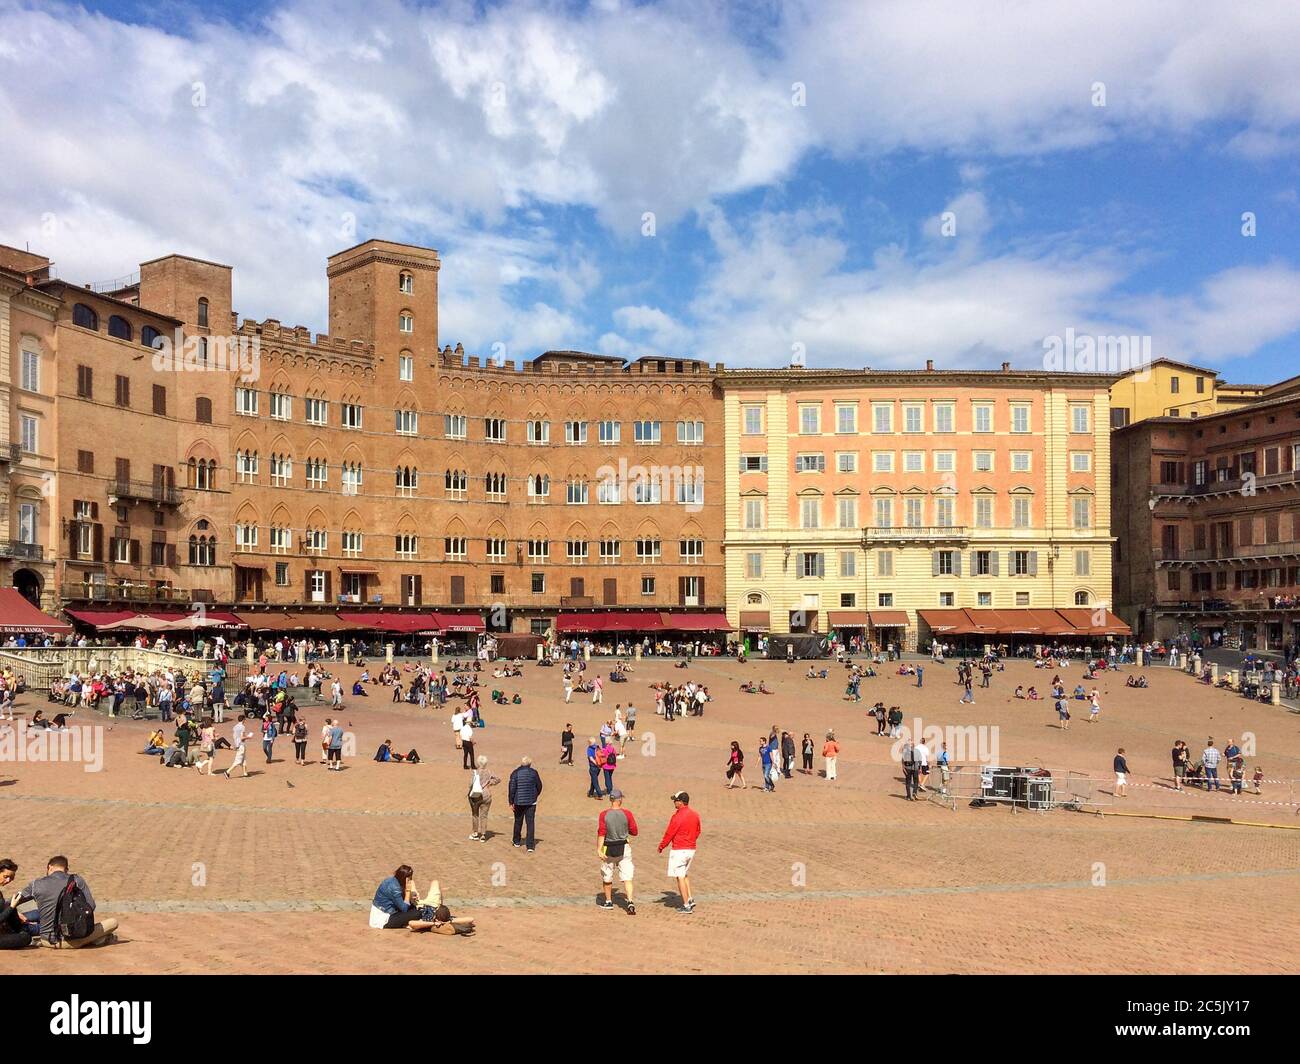 Die Piazza del Campo das zentrale Ziel aller Besucher die Siena besuchen, hier findet das traditionelle Pferderennen der Palio statt Stockfoto